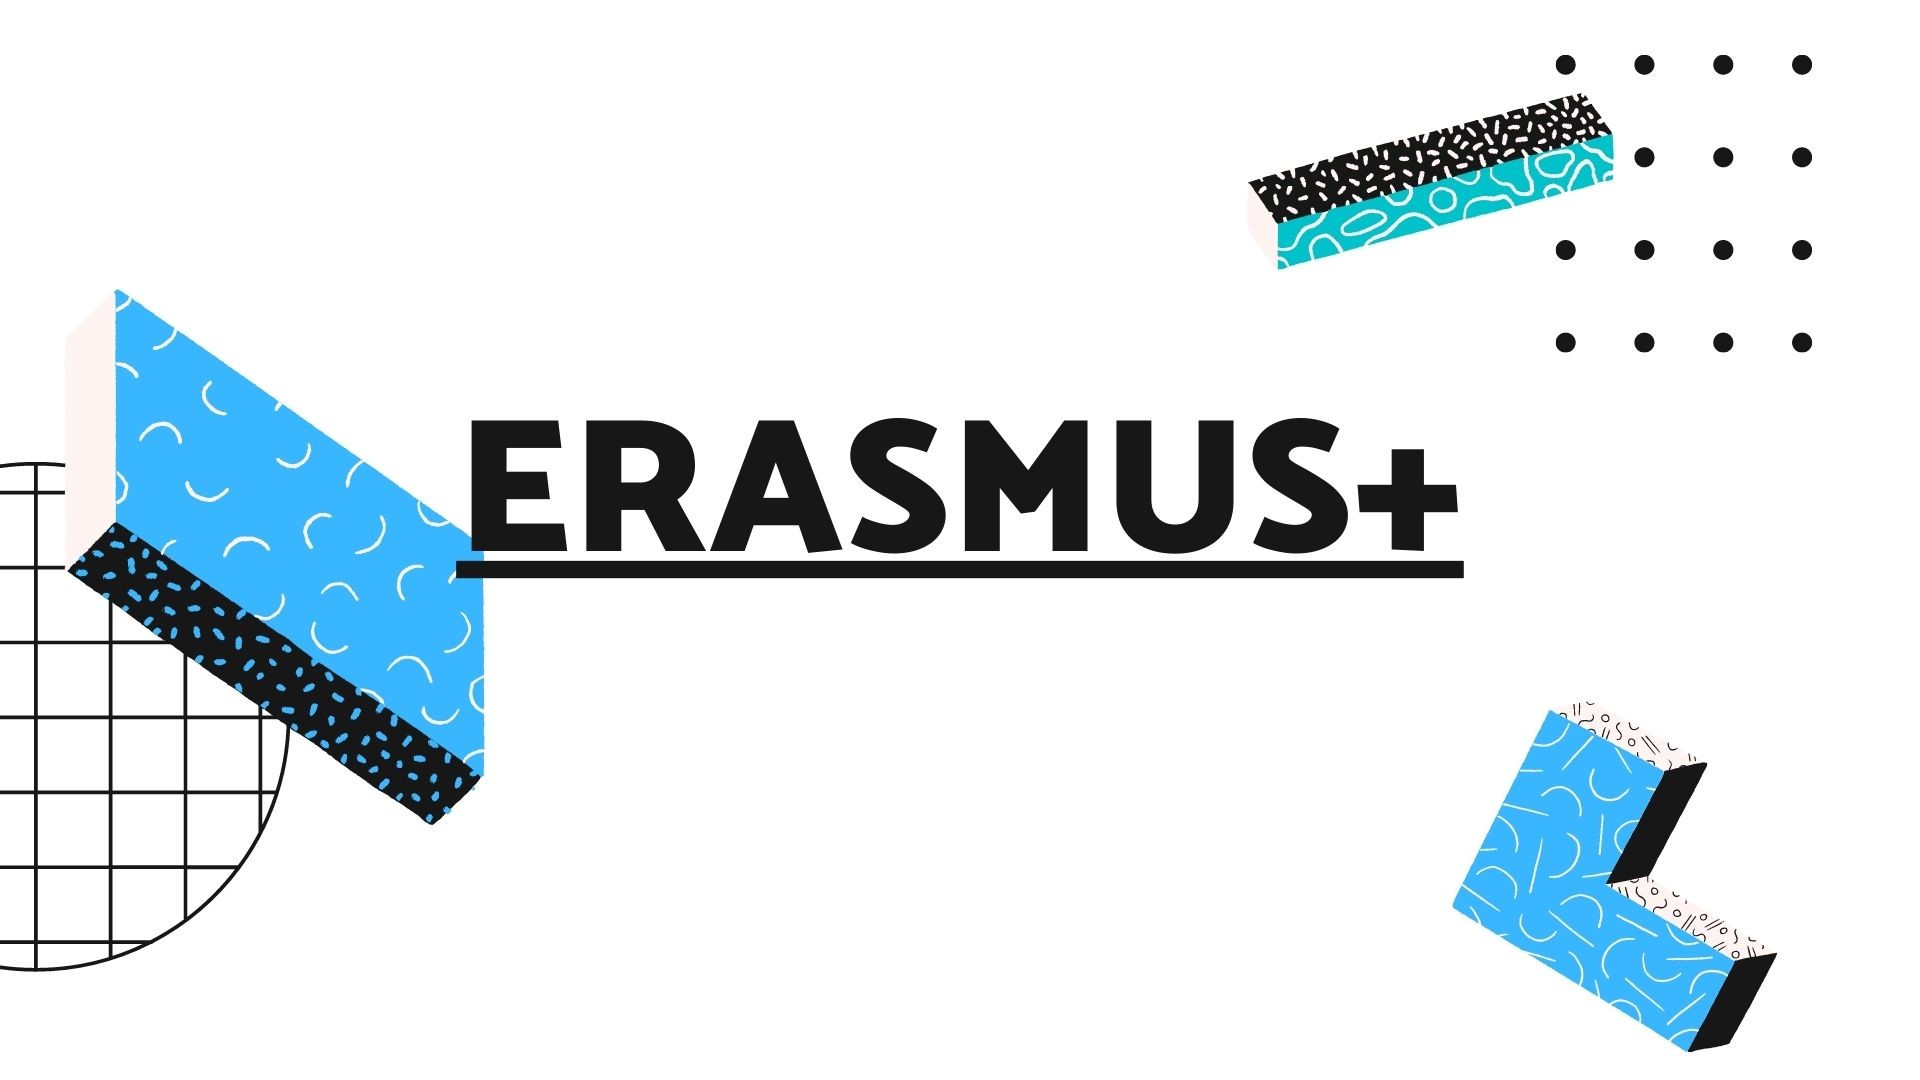            Erasmus+. ,,, Erasmus+